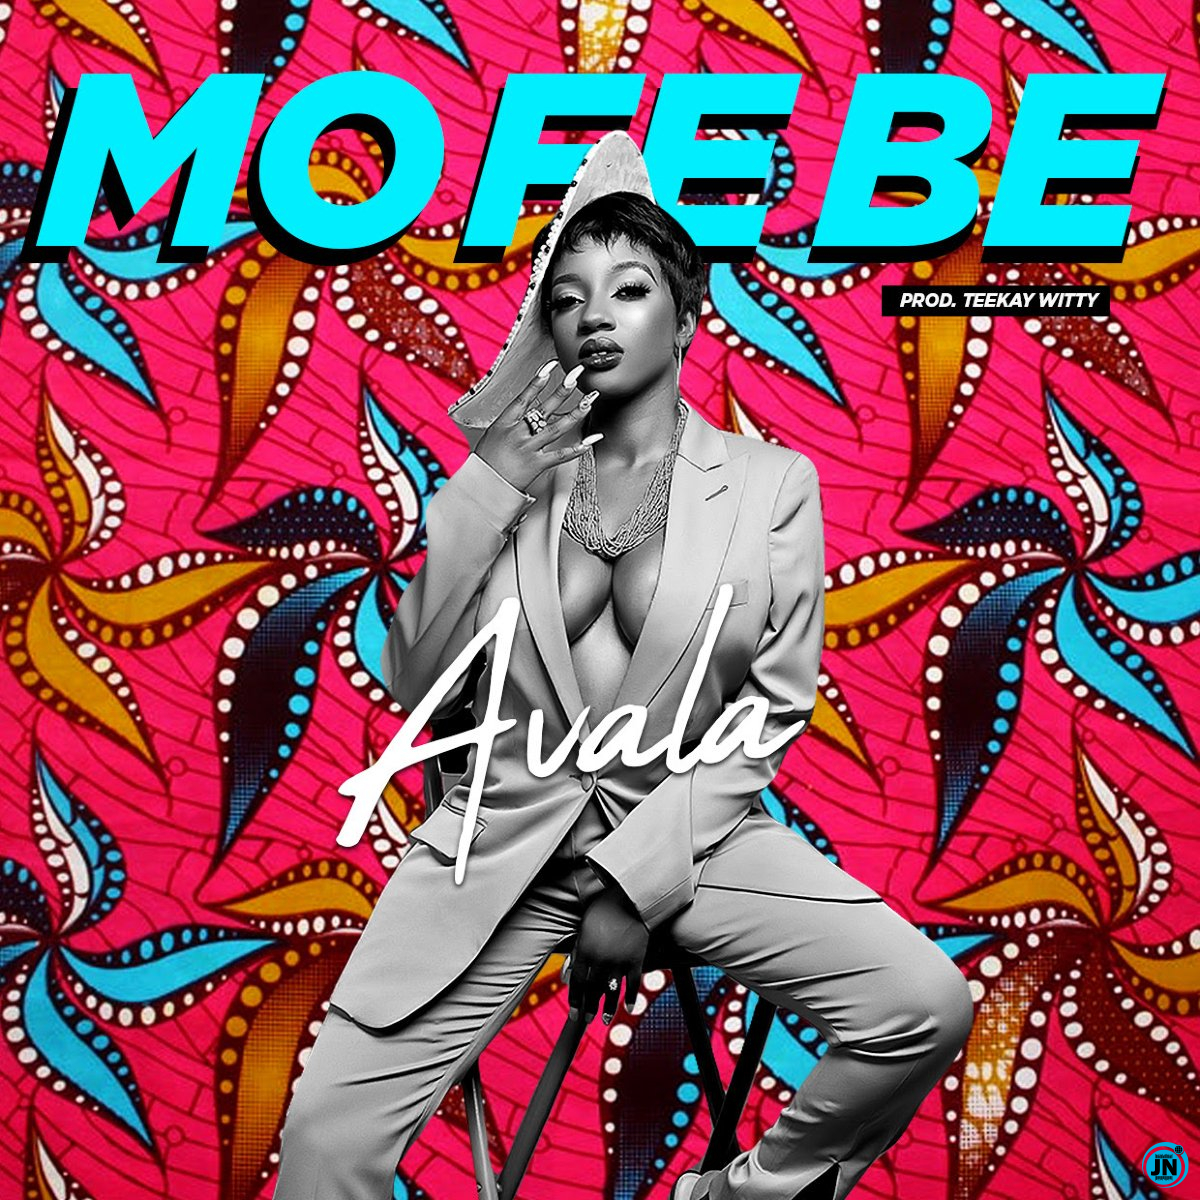 Avala - Mo Fe Be   Mp3 Download lyrics